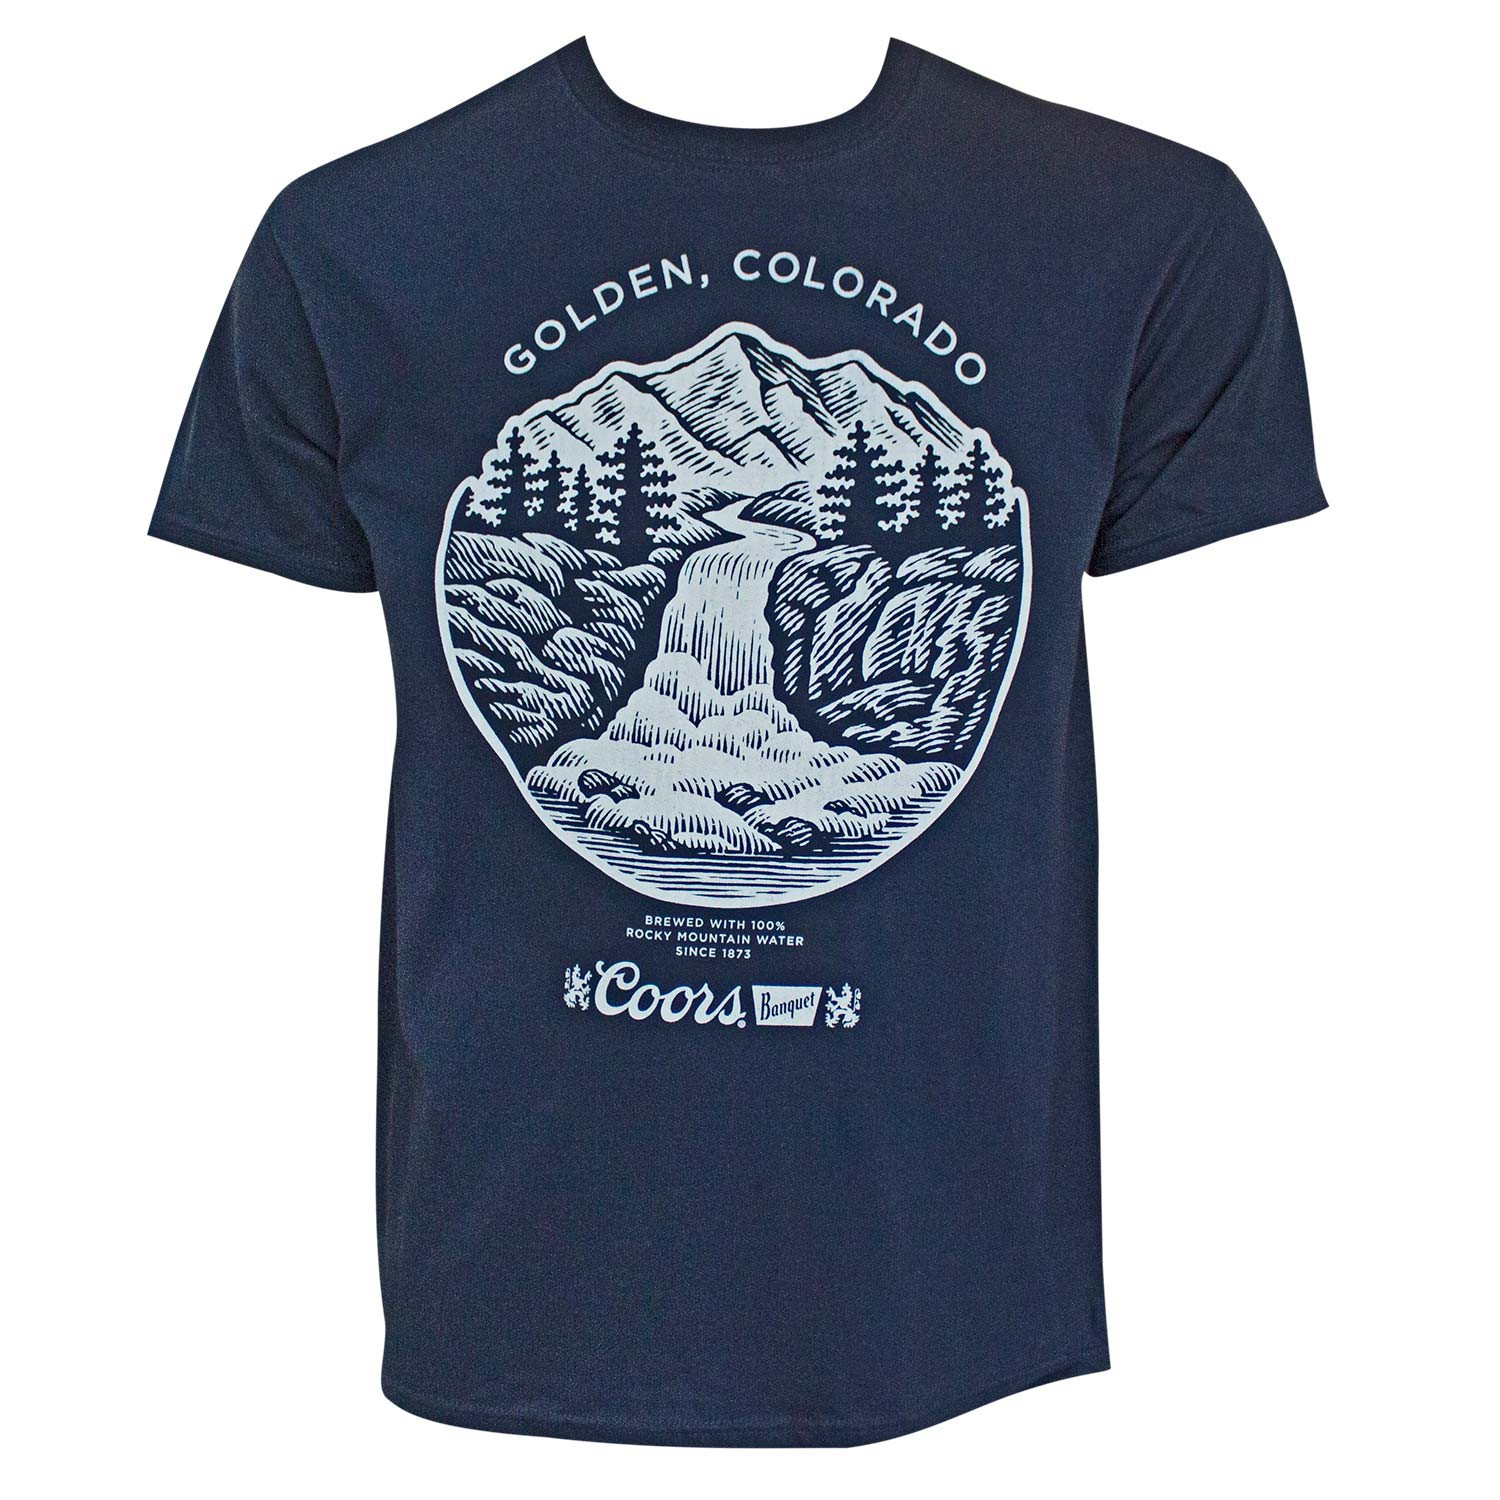 Coors Golden Colorado Men's Navy Blue T-Shirt